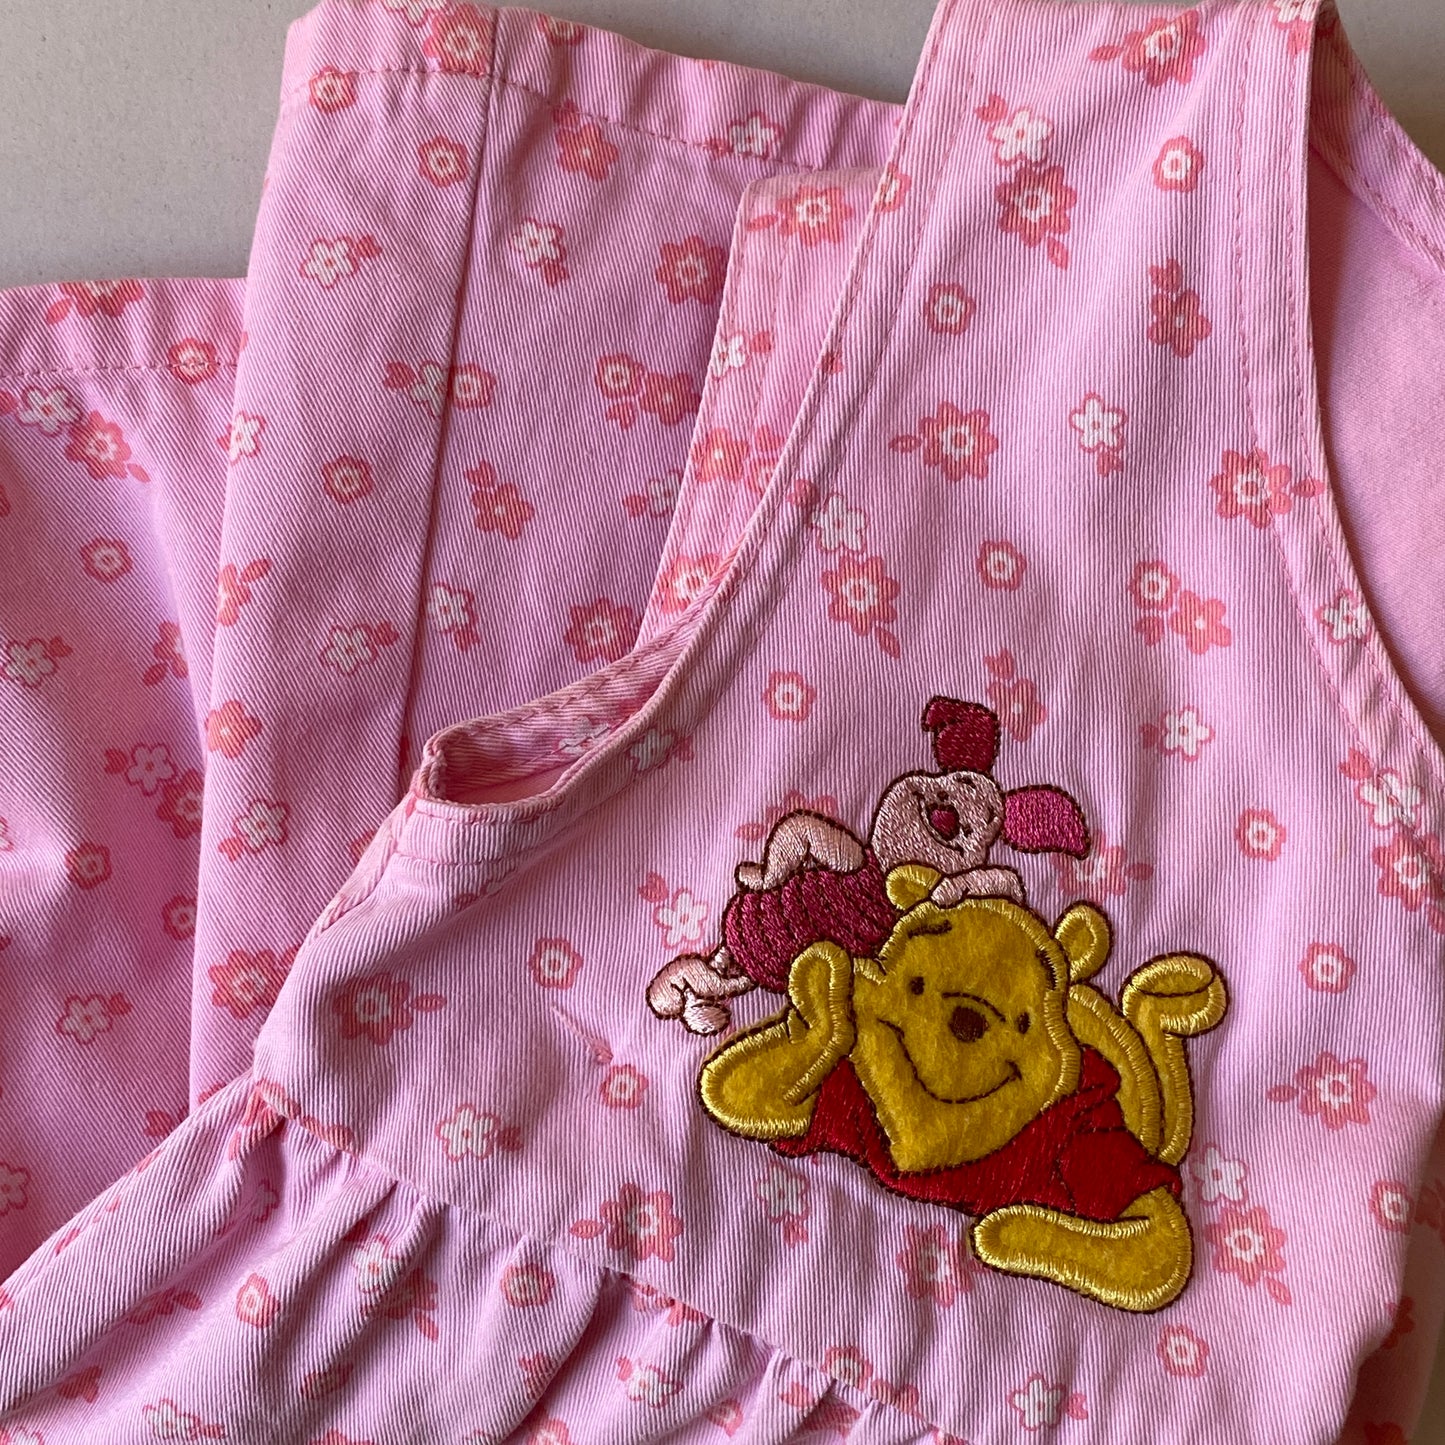 Pooh Piglet Pink Floral Tie-Side Dress (2T)